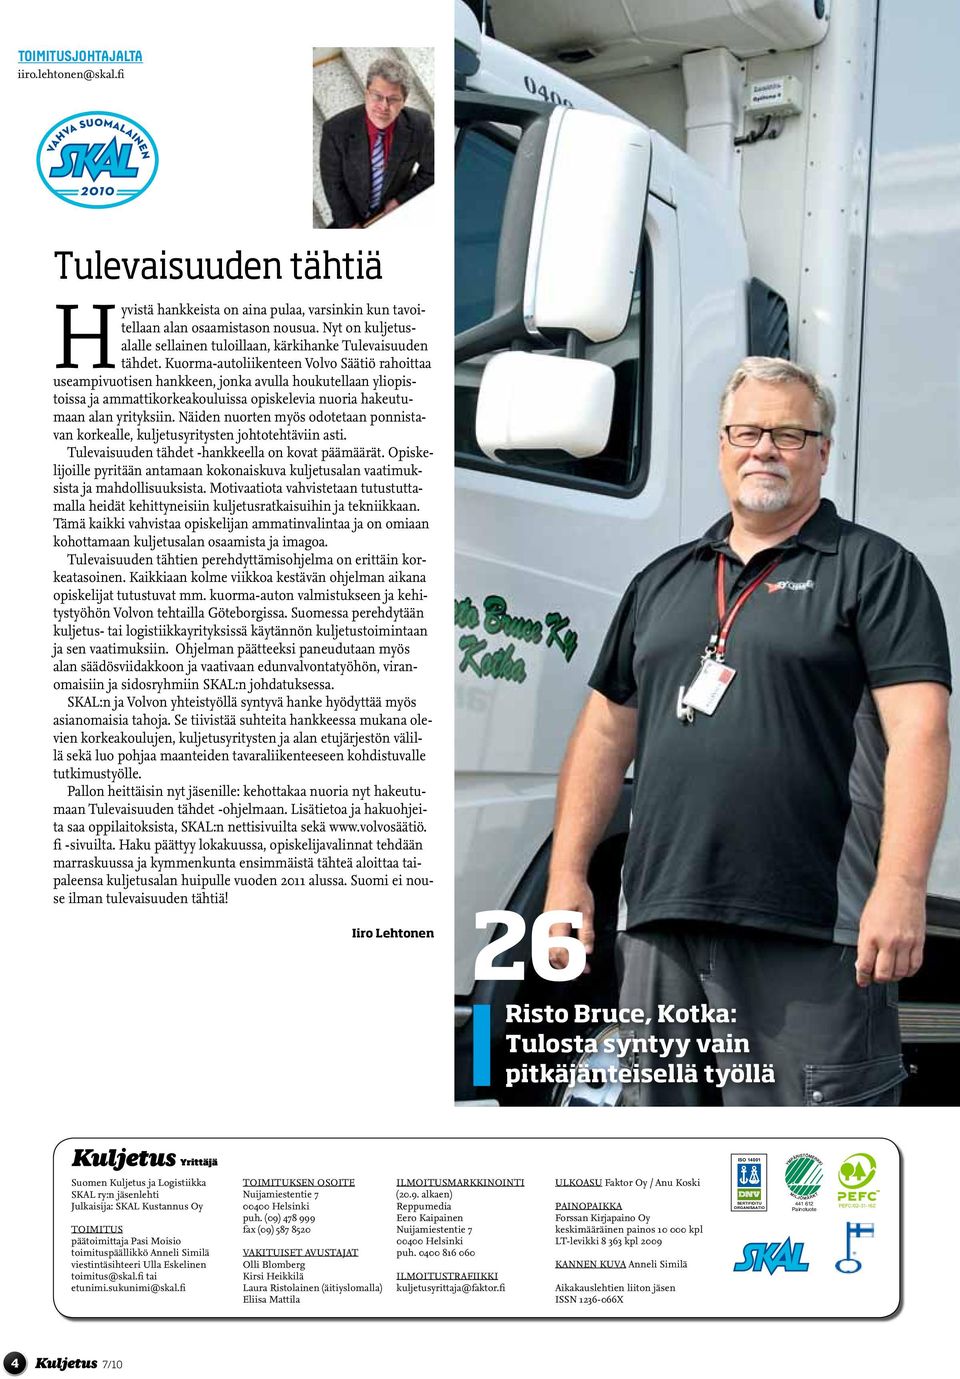 Kuorma-autoliikenteen Volvo Säätiö rahoittaa useampivuotisen hankkeen, jonka avulla houkutellaan yliopistoissa ja ammattikorkeakouluissa opiskelevia nuoria hakeutumaan alan yrityksiin.